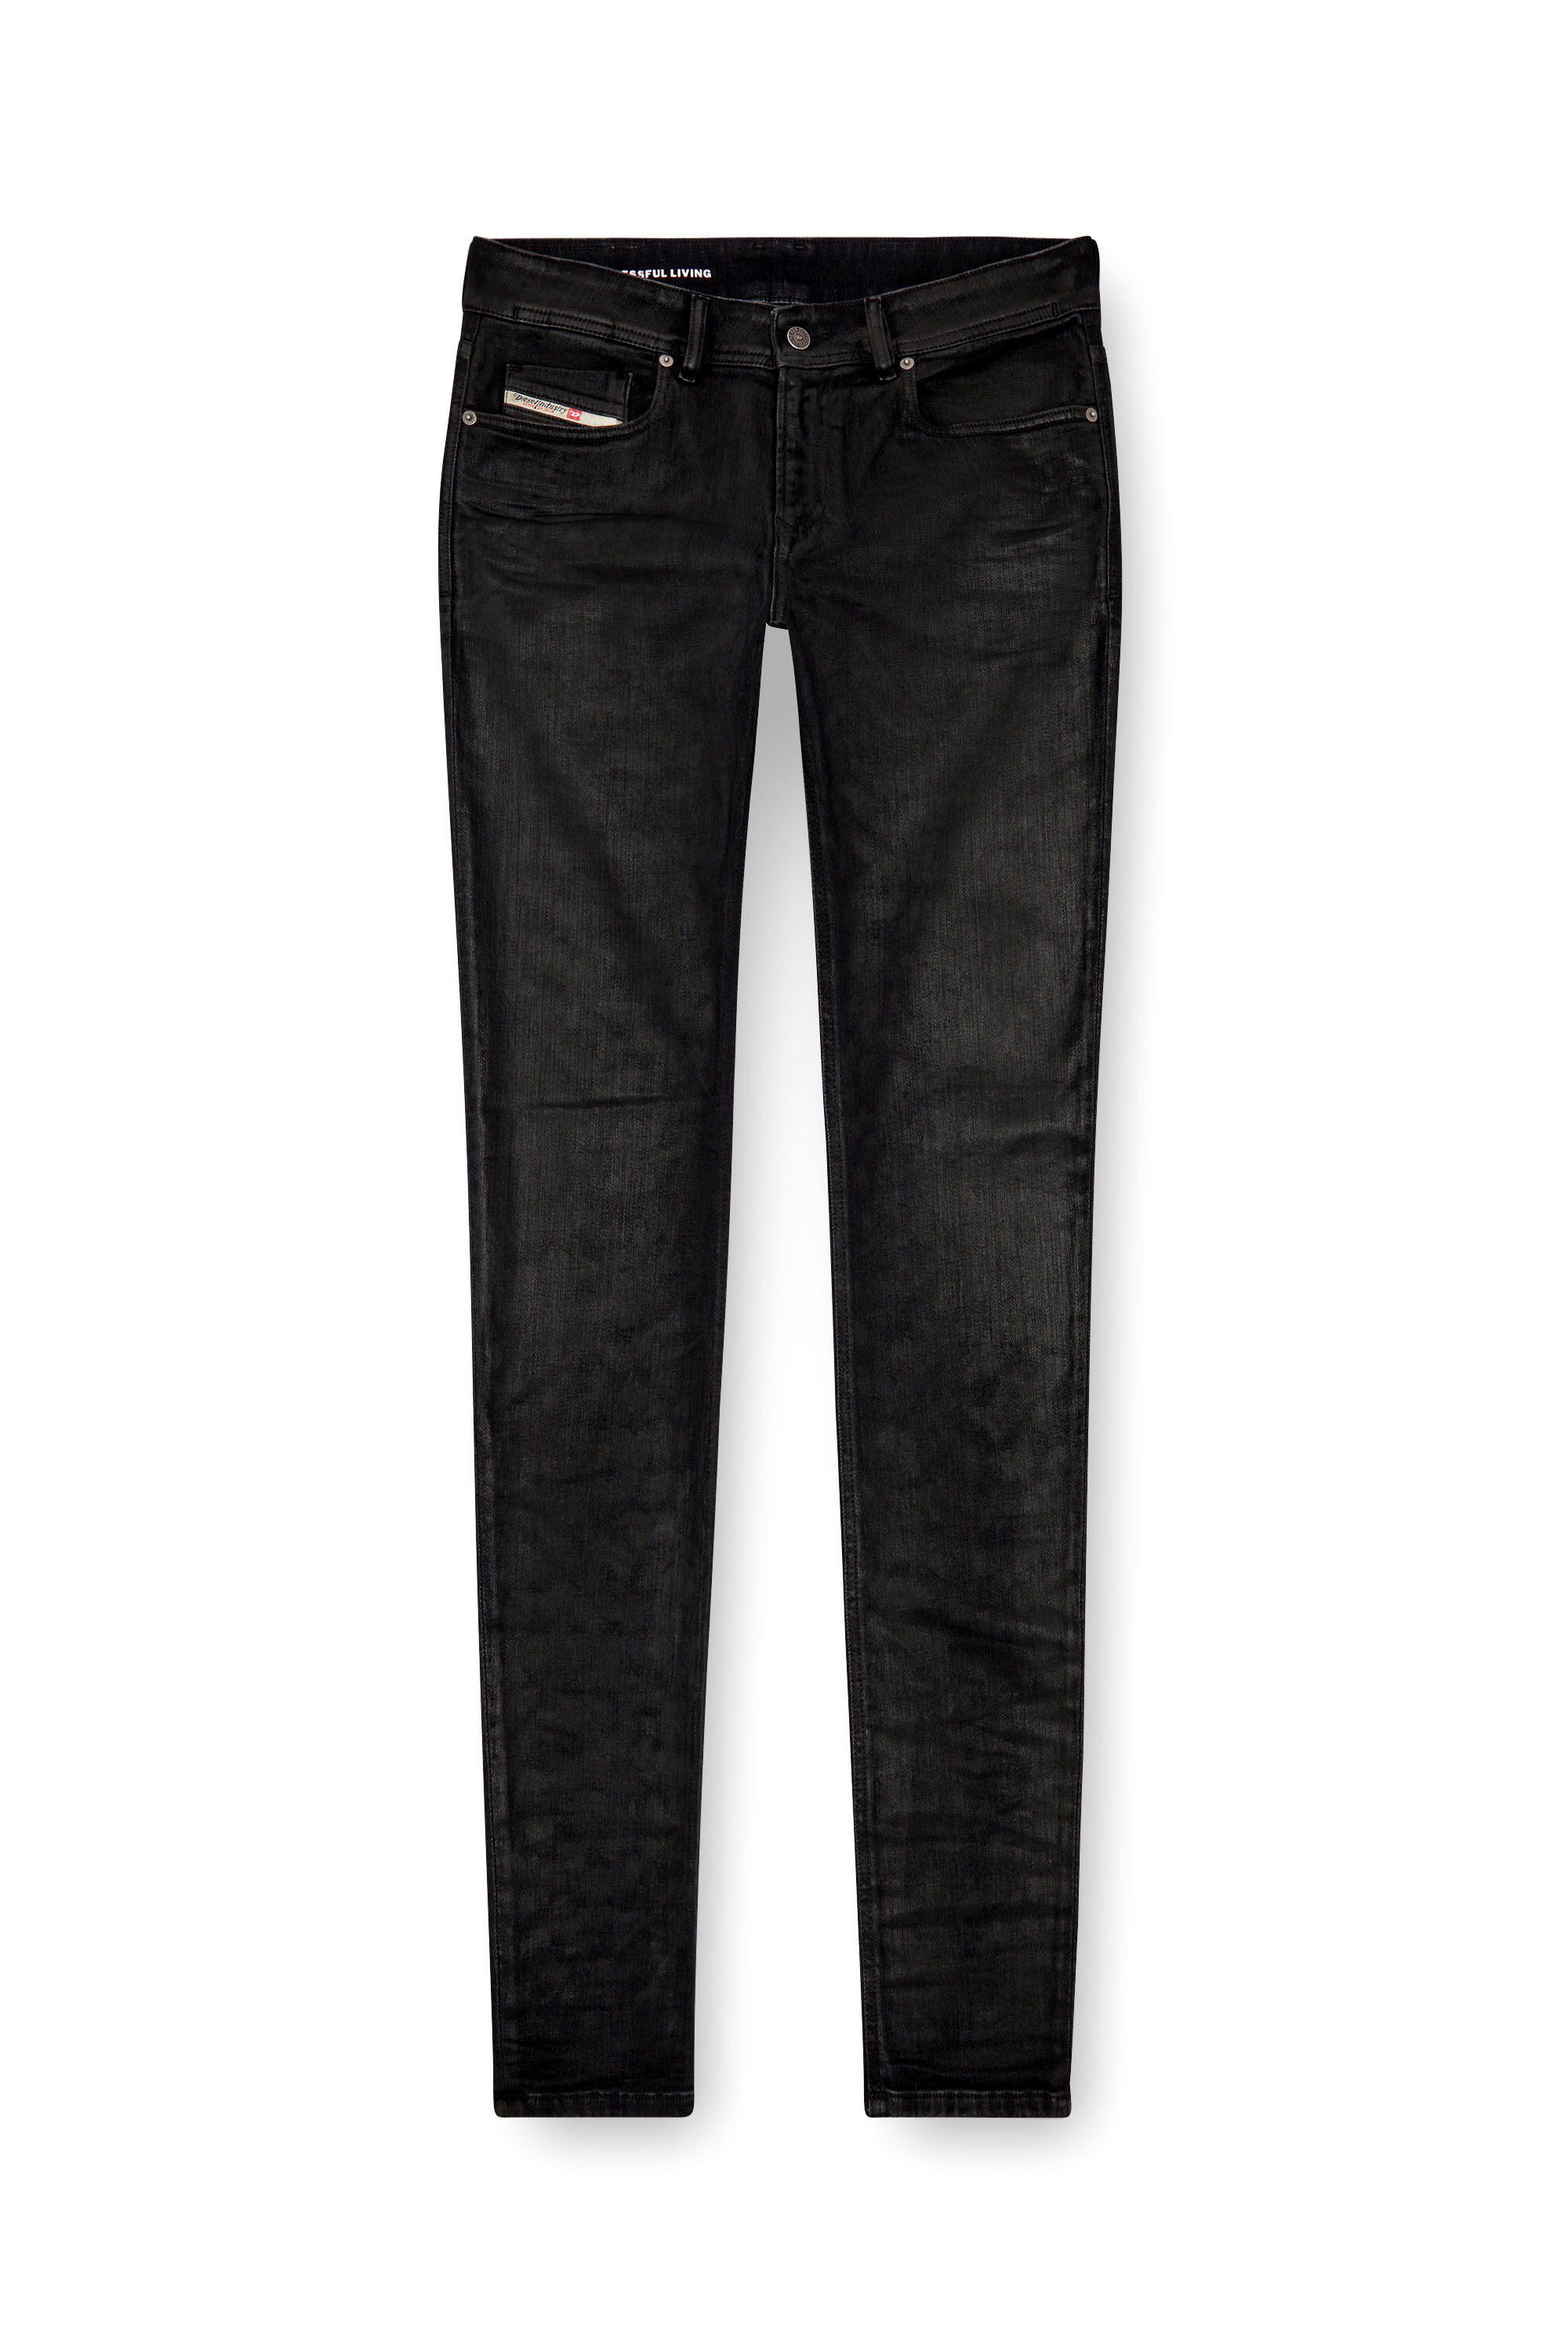 Diesel - Man Skinny Jeans 1979 Sleenker 09J30, Black/Dark grey - Image 2